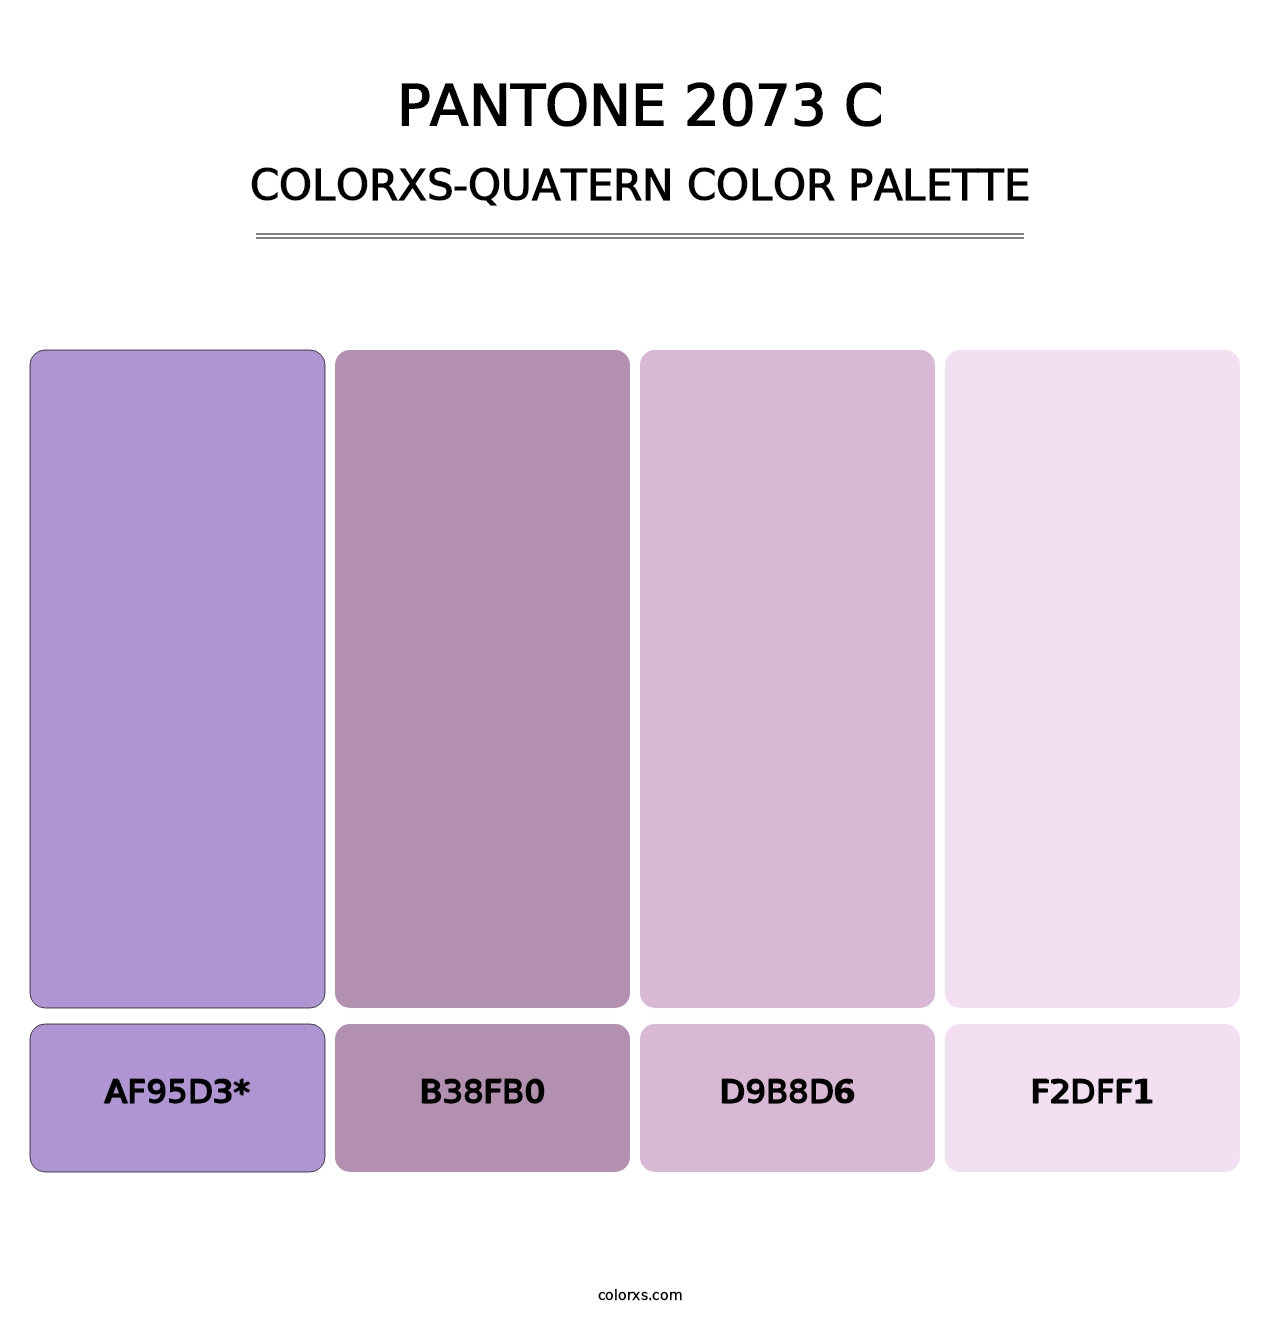 PANTONE 2073 C - Colorxs Quatern Palette